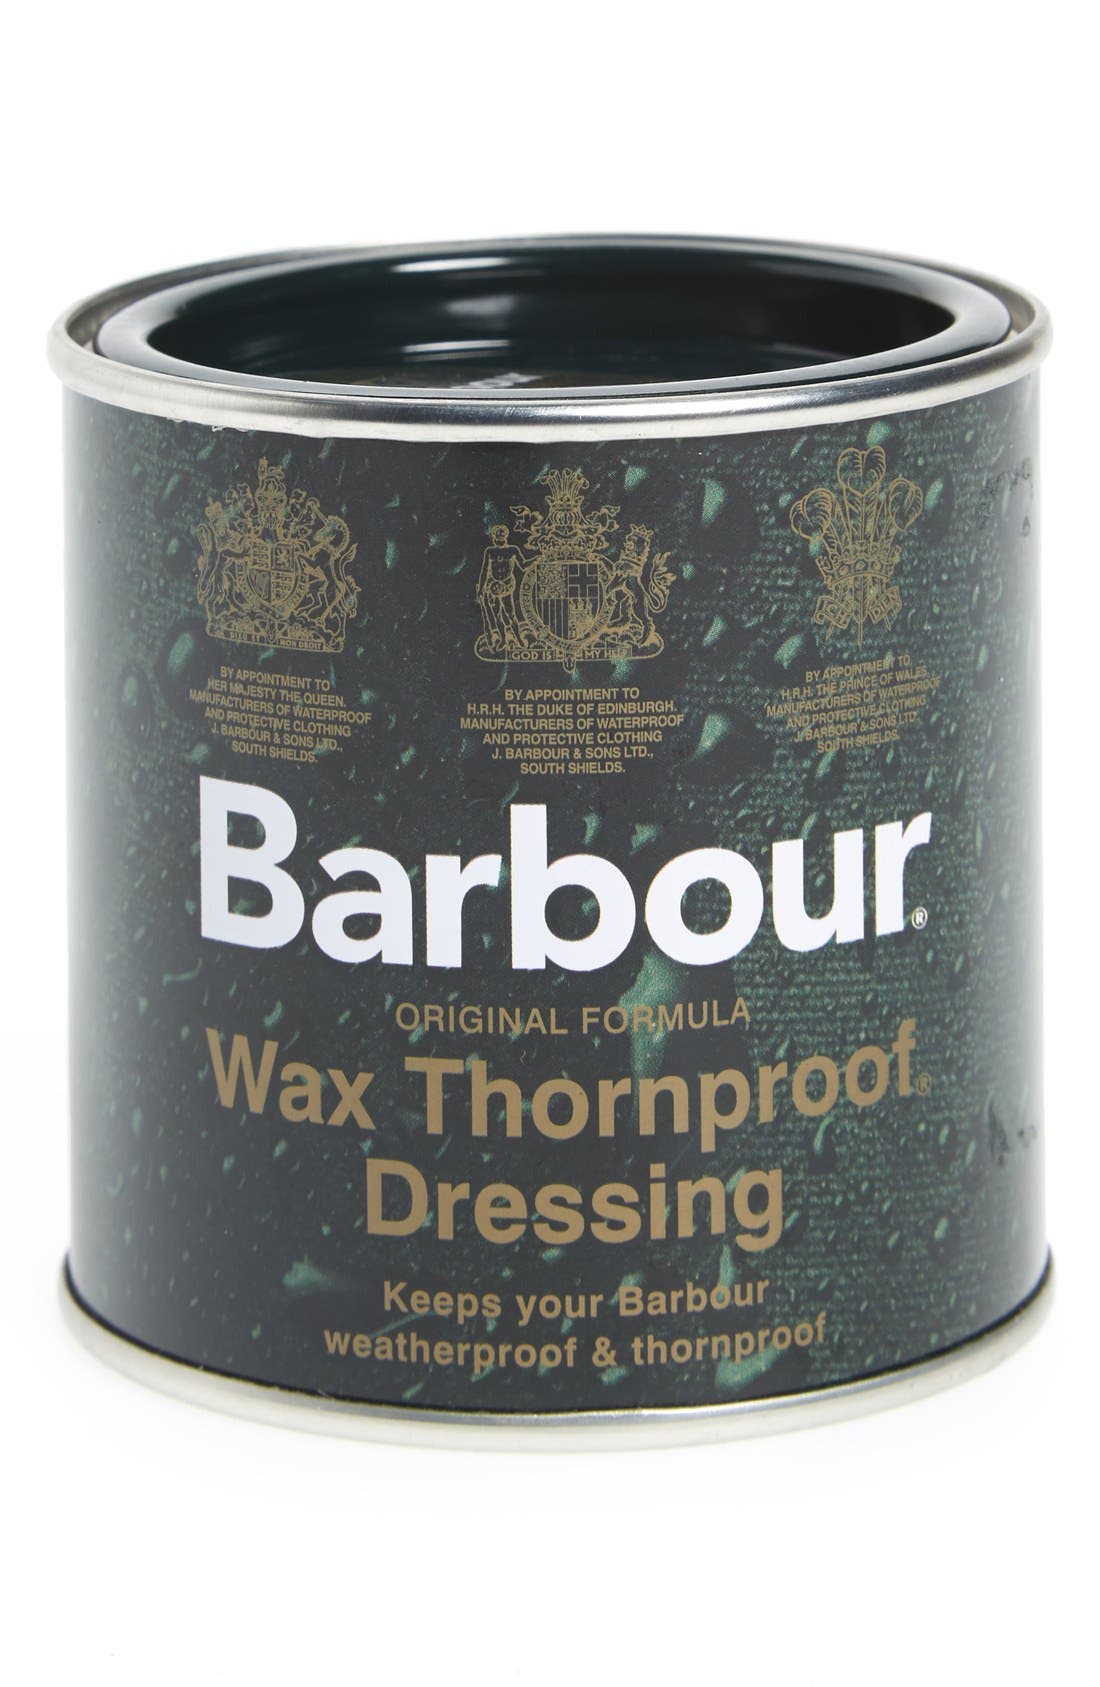 barbour wax thornproof